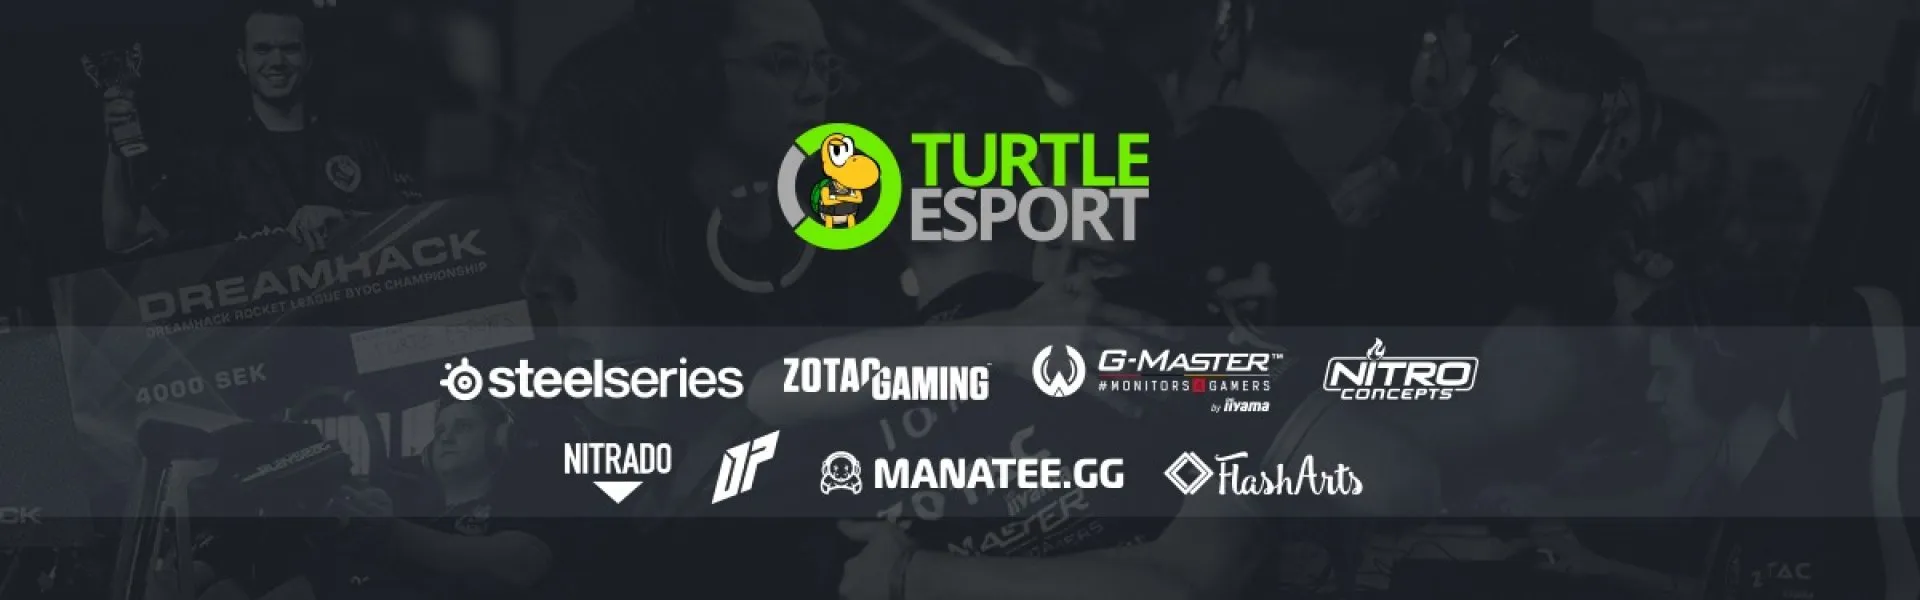 Turtle eSport banner